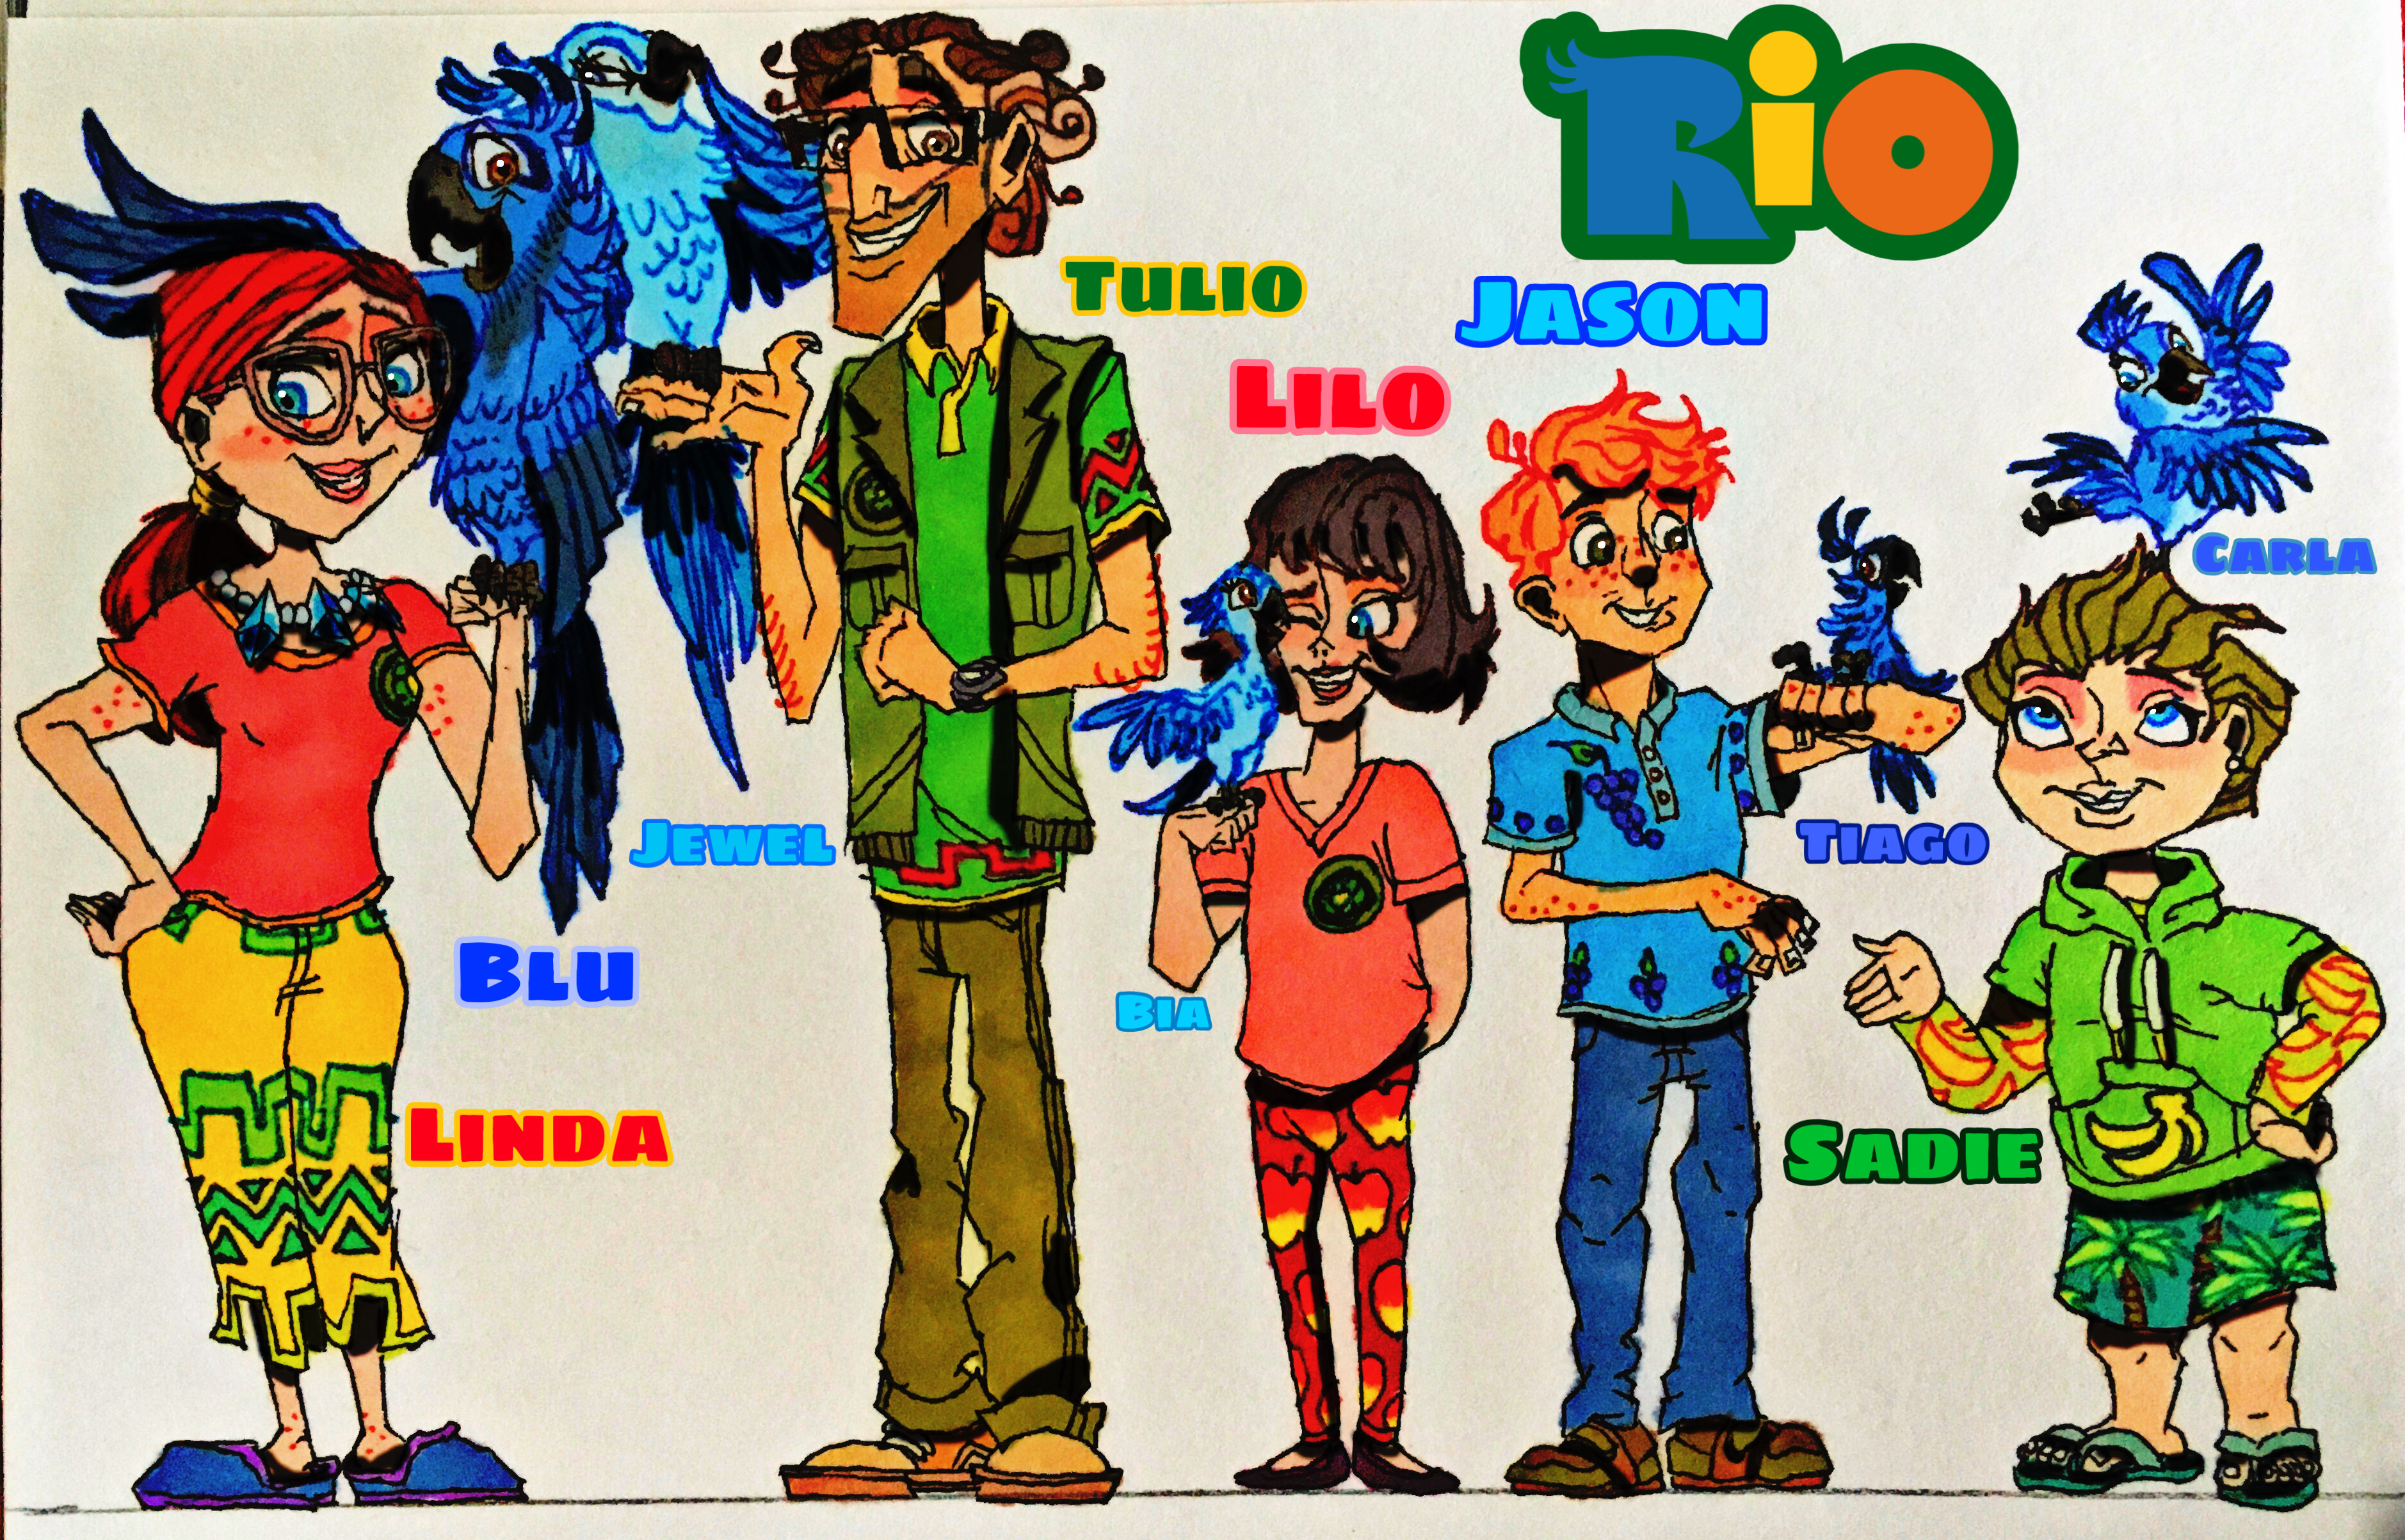 Rio Linda And Tulios Children By Wilduda On Deviantart